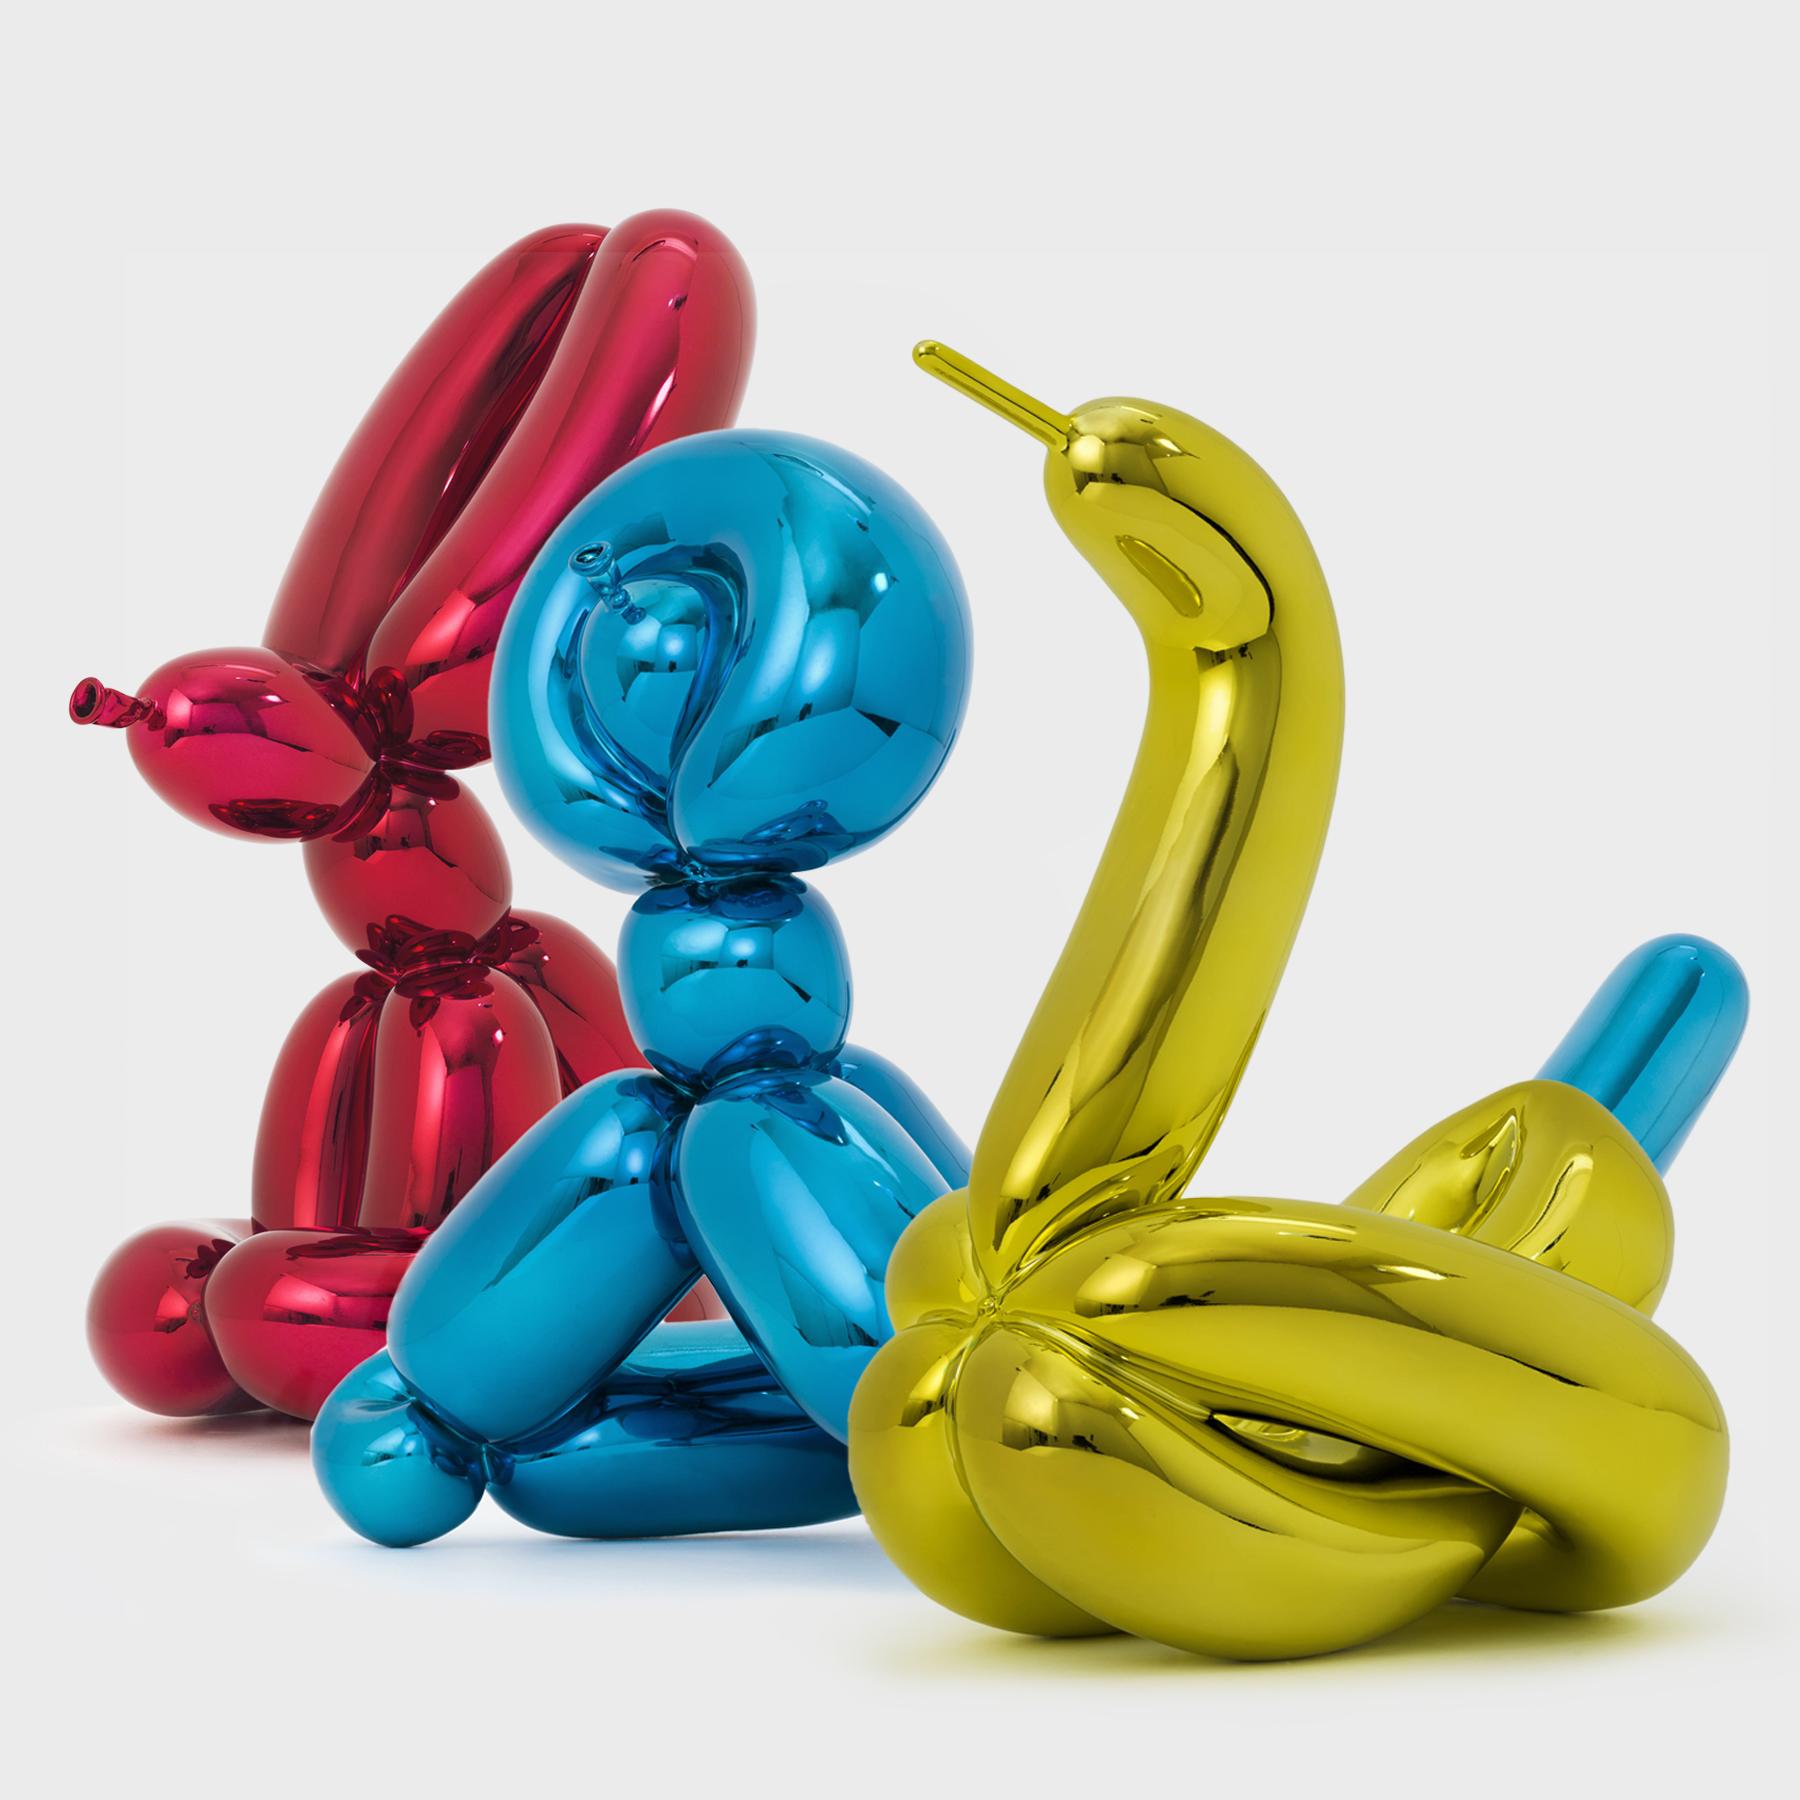 Dieses Set mit den Ballontieren von Jeff Koons besteht aus einem Ballonhasen, einem Ballonaffen und einem Ballonschwan, die aus stark reflektierendem Porzellan gefertigt sind. Dieses Set, das das Vokabular seiner ikonischen Celebration-Skulpturen